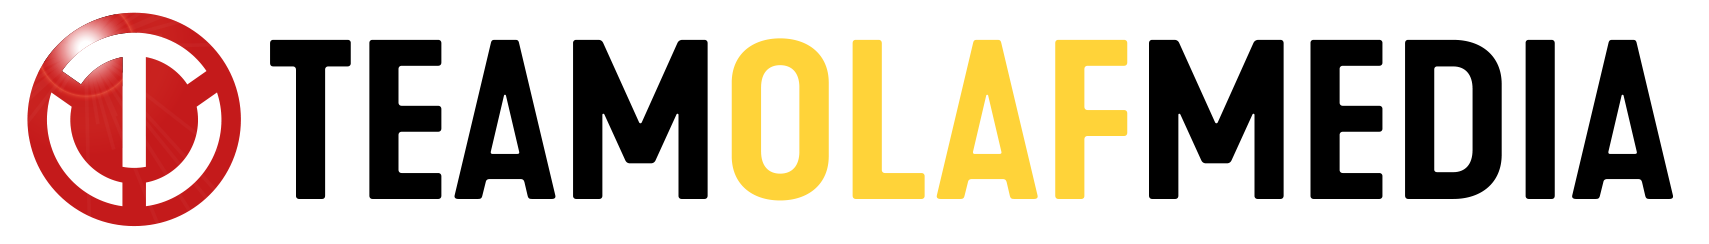 Team Olaf Media